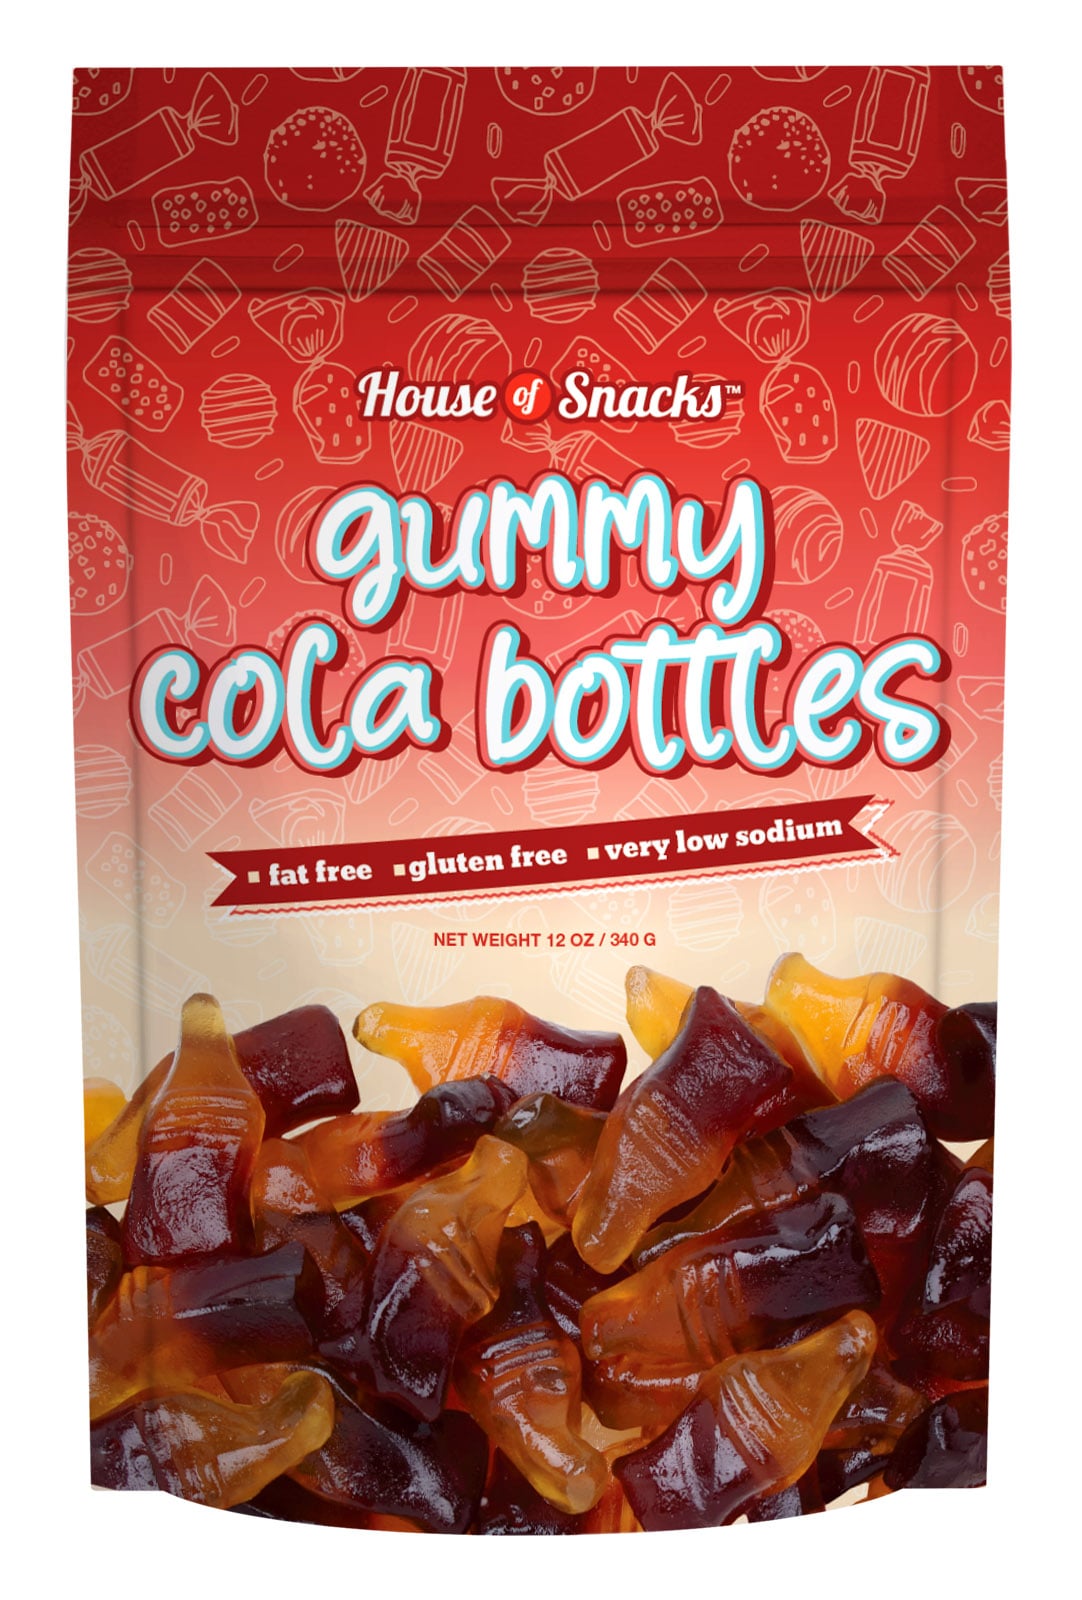 Gummy Cola Bottles